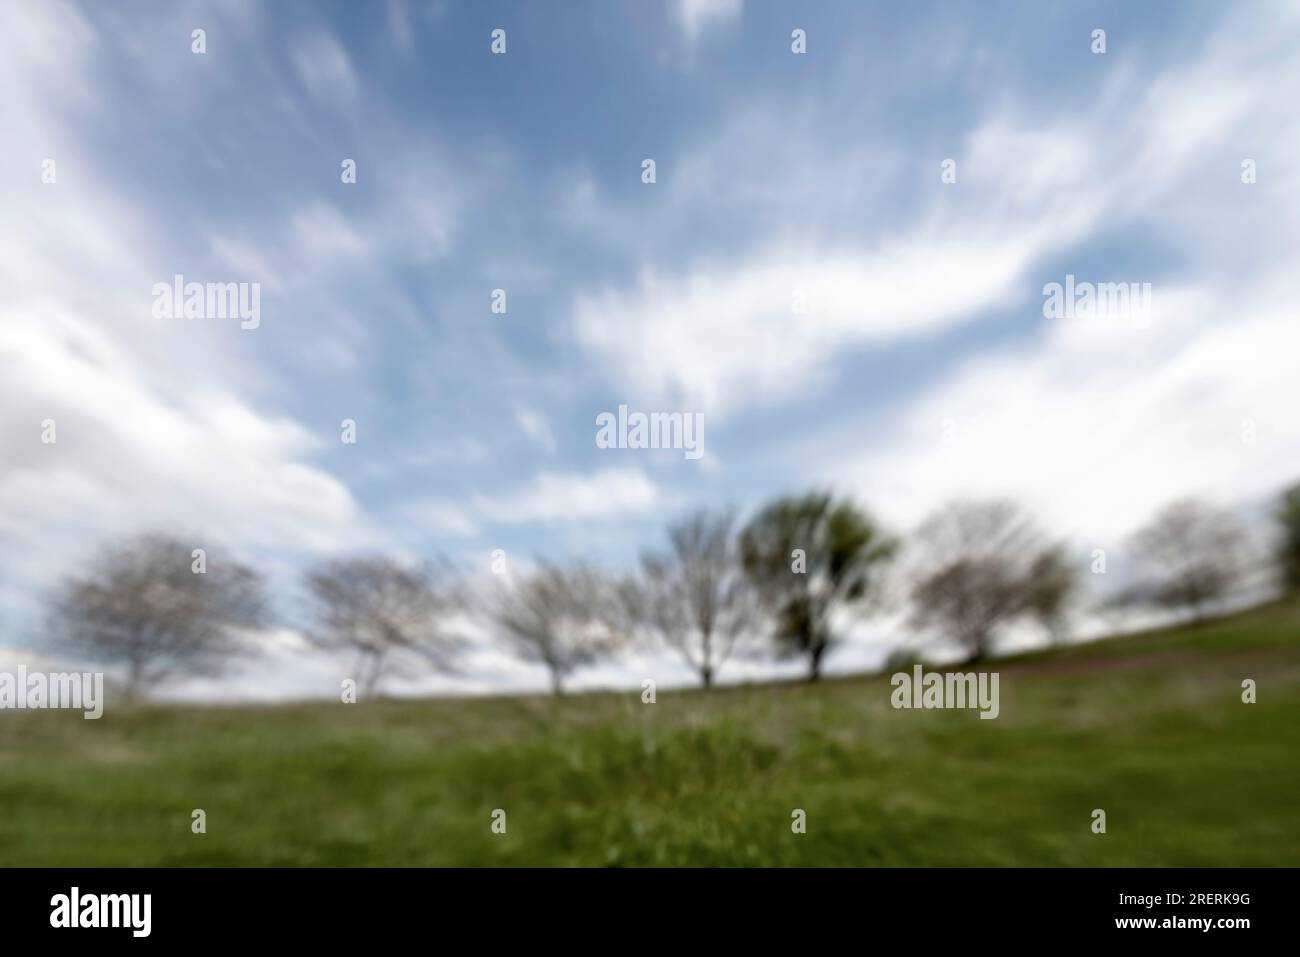 Landschaftlich grünes Grasfeld mit unscharfen Bäumen Hintergrund und blauem Himmel mit Wolken in Bewegung, Design eines windigen Sommertags Stockfoto